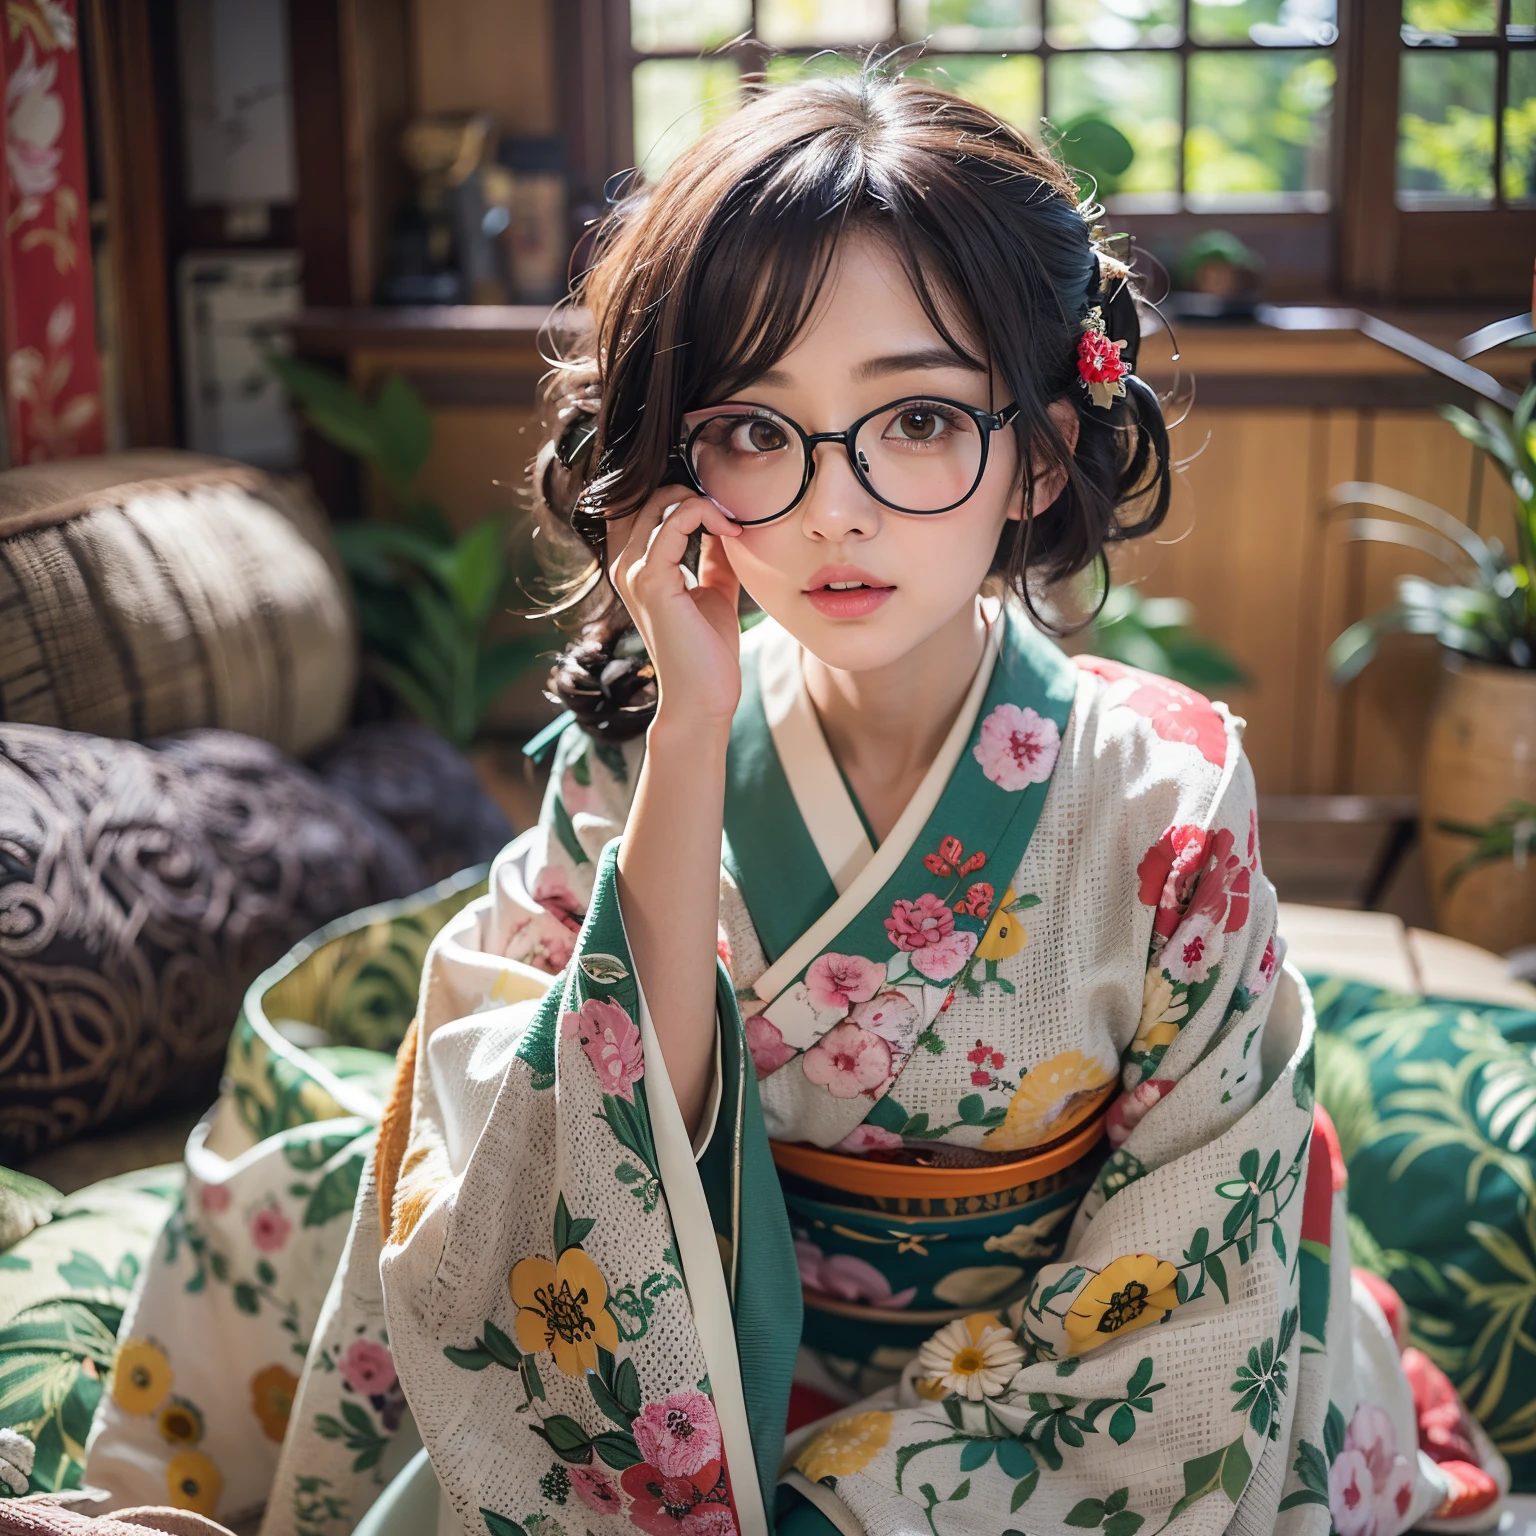 Лучшее качество, шедевр, сверхвысокое разрешение, (фотореалистичный:1.4), сырое фото, Чрезвычайно детализированные, Идеальная анатомия, 1 девушка, самая популярная японская модель, носить японское КИМОНО и очки с милым дизайном, Сидящая SEIZA в традиционном японском языке,комната, Наклонившись вперед, невероятно красивое лицо, как у самой известной японской модели, Удивительно красивые большие черные глаза сплошного круга, очень красивые реалистичные скины, очень красивая черно-короткая стрижка, очень красивая большая грудь, очень красивое декольте, подробное японское КИМОНО, детальные очки с милым дизайном, Подробное красивое лицо, подробные глаза, подробные реалистичные скины, подробный черноволосый с короткой стрижкой, подробная большая грудь, детальное расщепление, detailed traditional Japanese комната